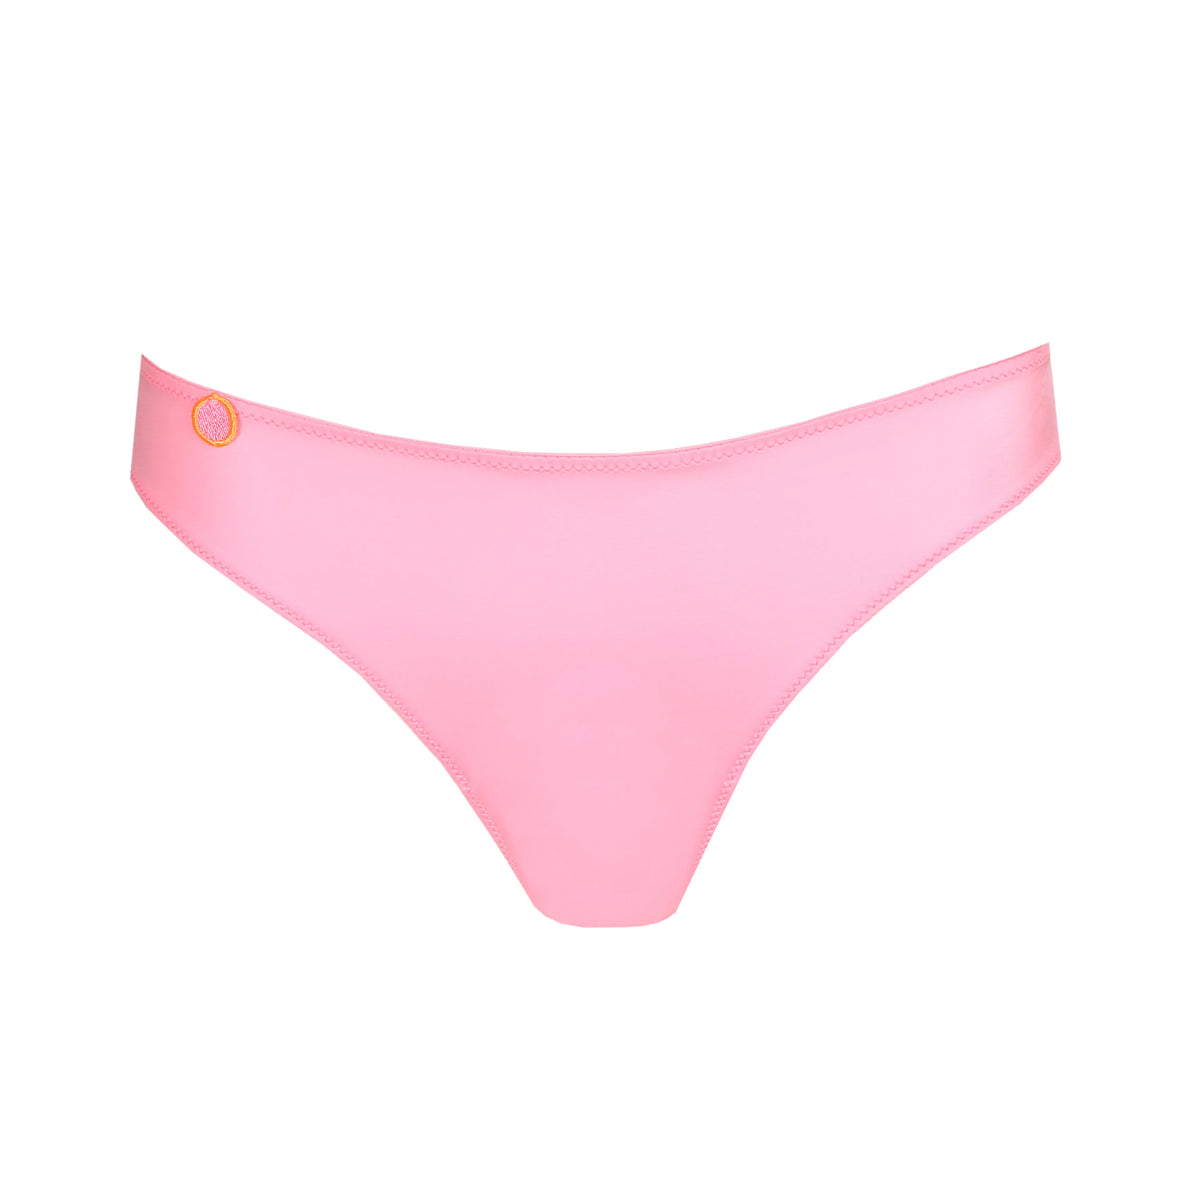 Underwear Suggestion: JOR – Club Thong Pink